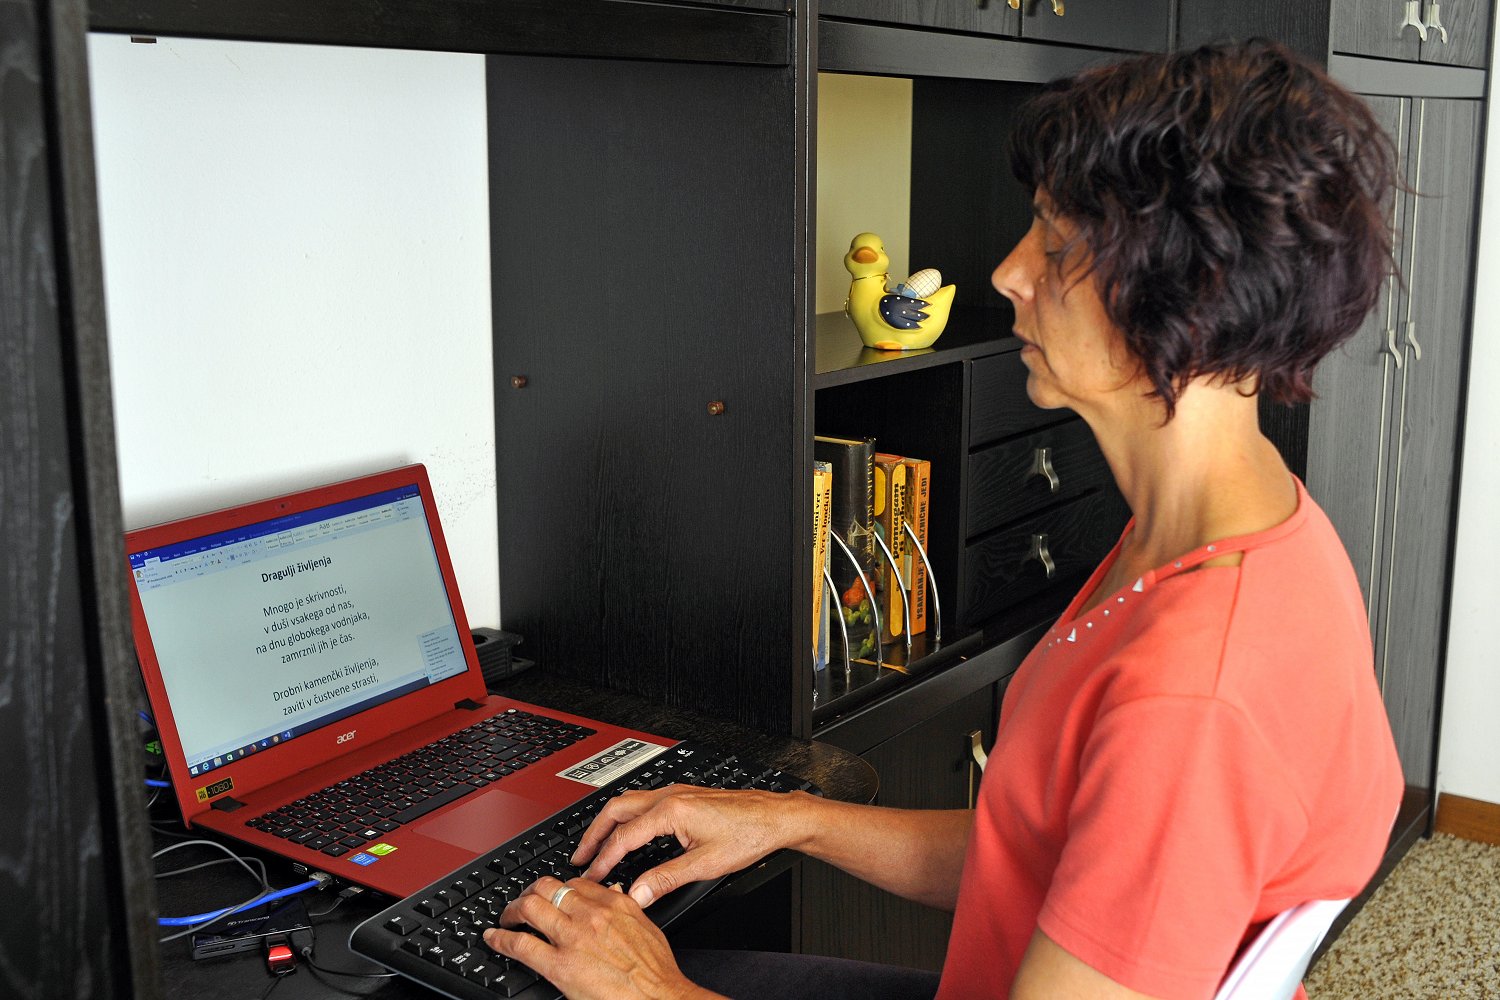 Ženska z okvaro vida s krajše pristriženimi temnimi lasmi v rdeči majici v domačem okolju sedi pred rdečim računalnikom in piše poezijo. Prsti počivajo na tipkah tipkovnice ki je povezana z računalnikom. Na črni omari za njo so zložene knjige eno polico višje pa stoji rumena in modra keramična raca.